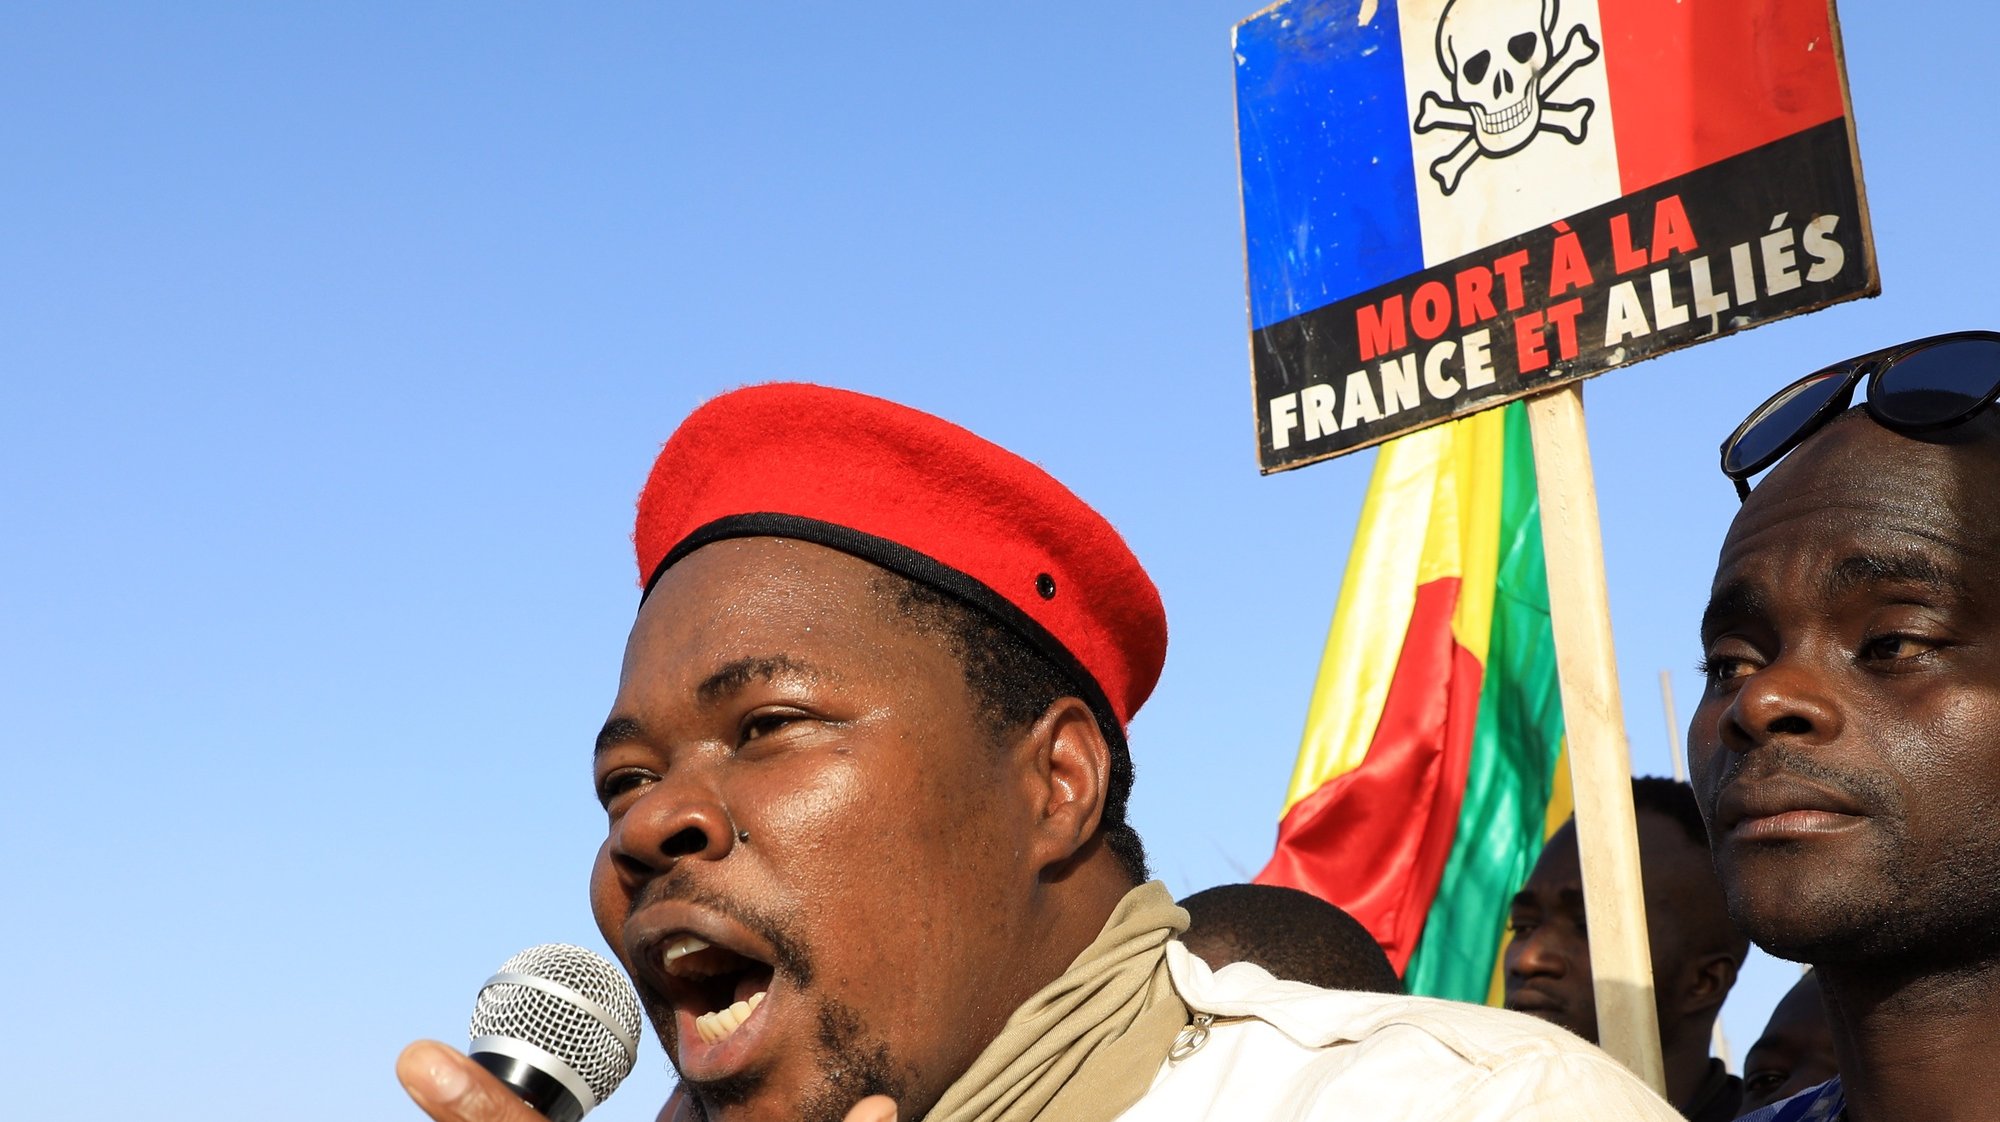 Os malianos protestam contra as tropas francesas. O lider da manifestação é Adama Ben Diarra